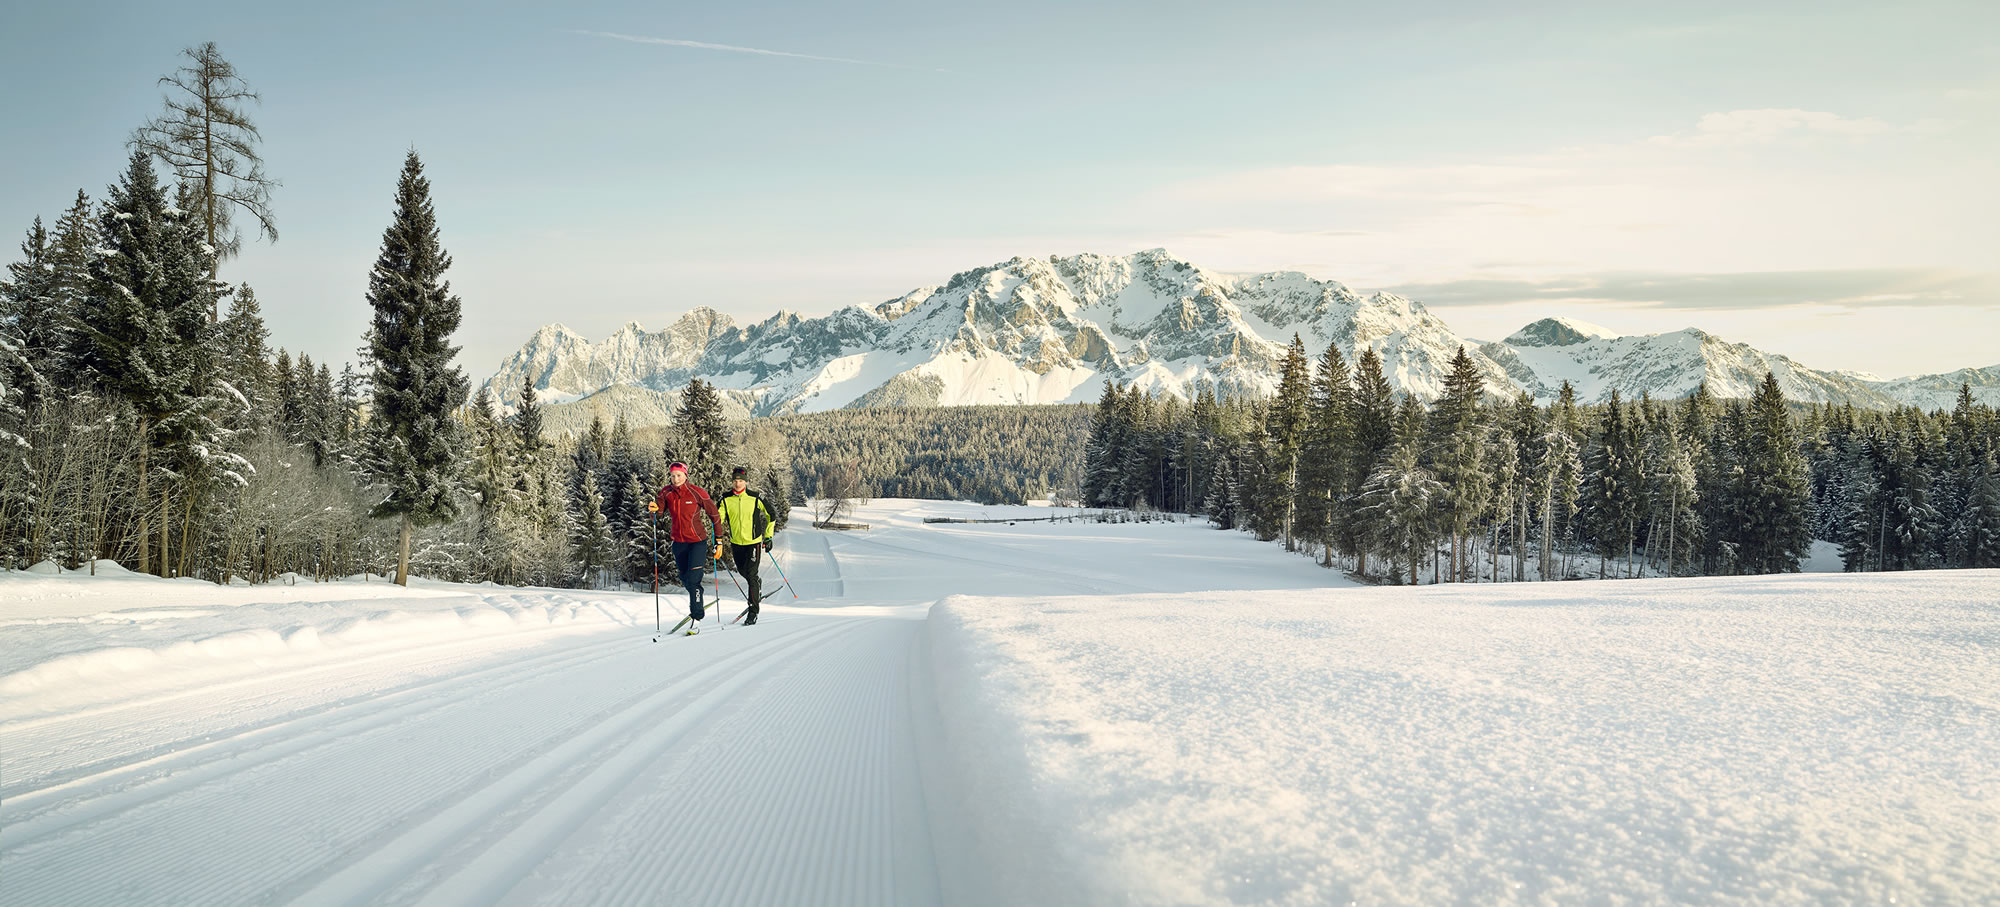 Langlaufen vor herrlicher Gebirgskulisse © Peter Burgstaller, Schladming-Dachstein